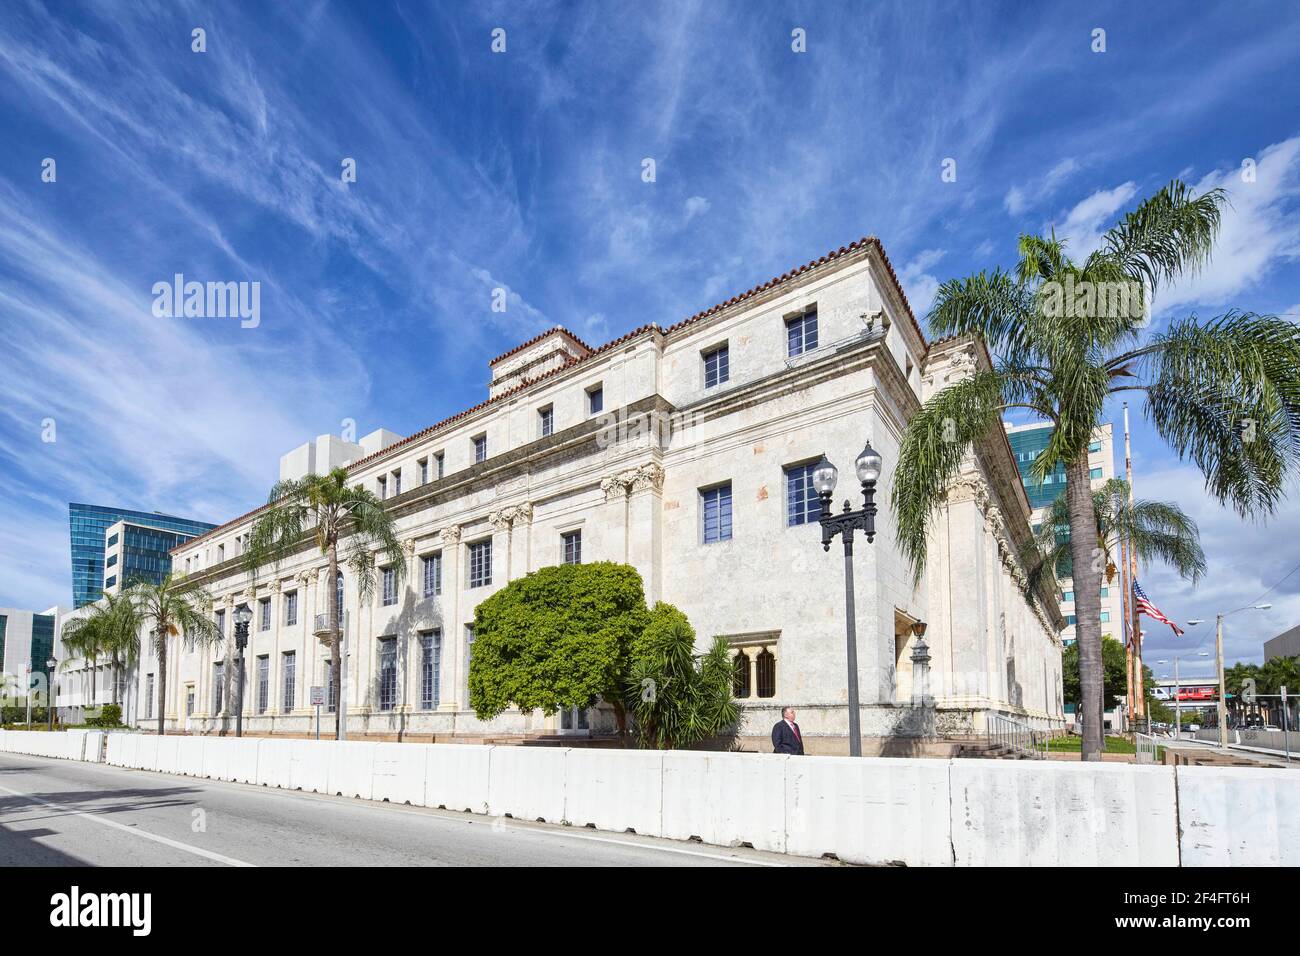 Conception du bâtiment fédéral David W Dyer et du palais de justice des États-Unis Par Carrere & Hastings architectural Firm à Miami Florida, États-Unis Banque D'Images